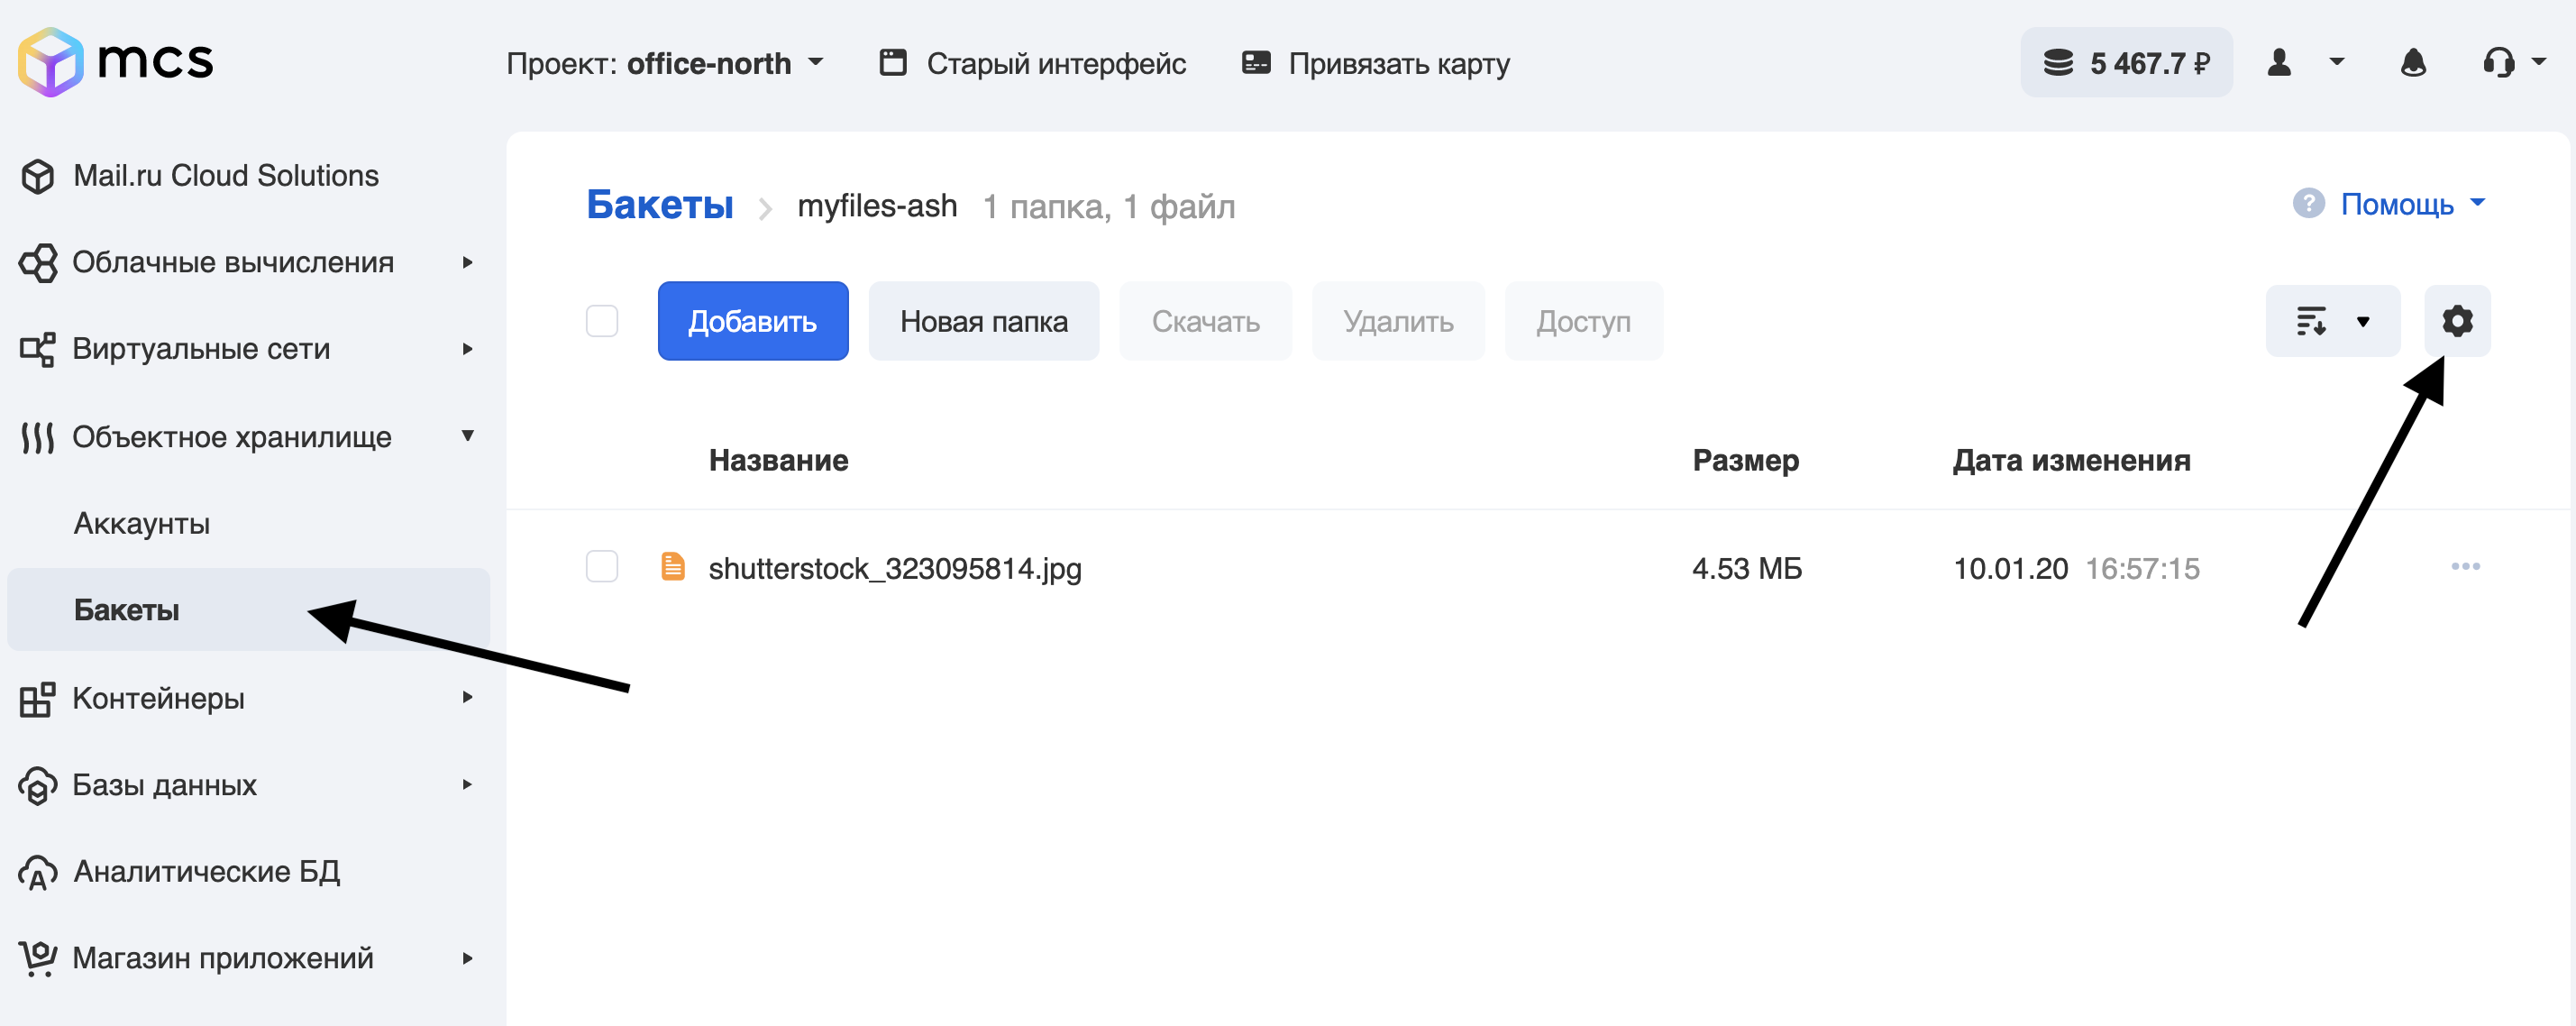 Пример event-driven приложения на основе вебхуков в объектном S3-хранилище Mail.ru Cloud Solutions - 2